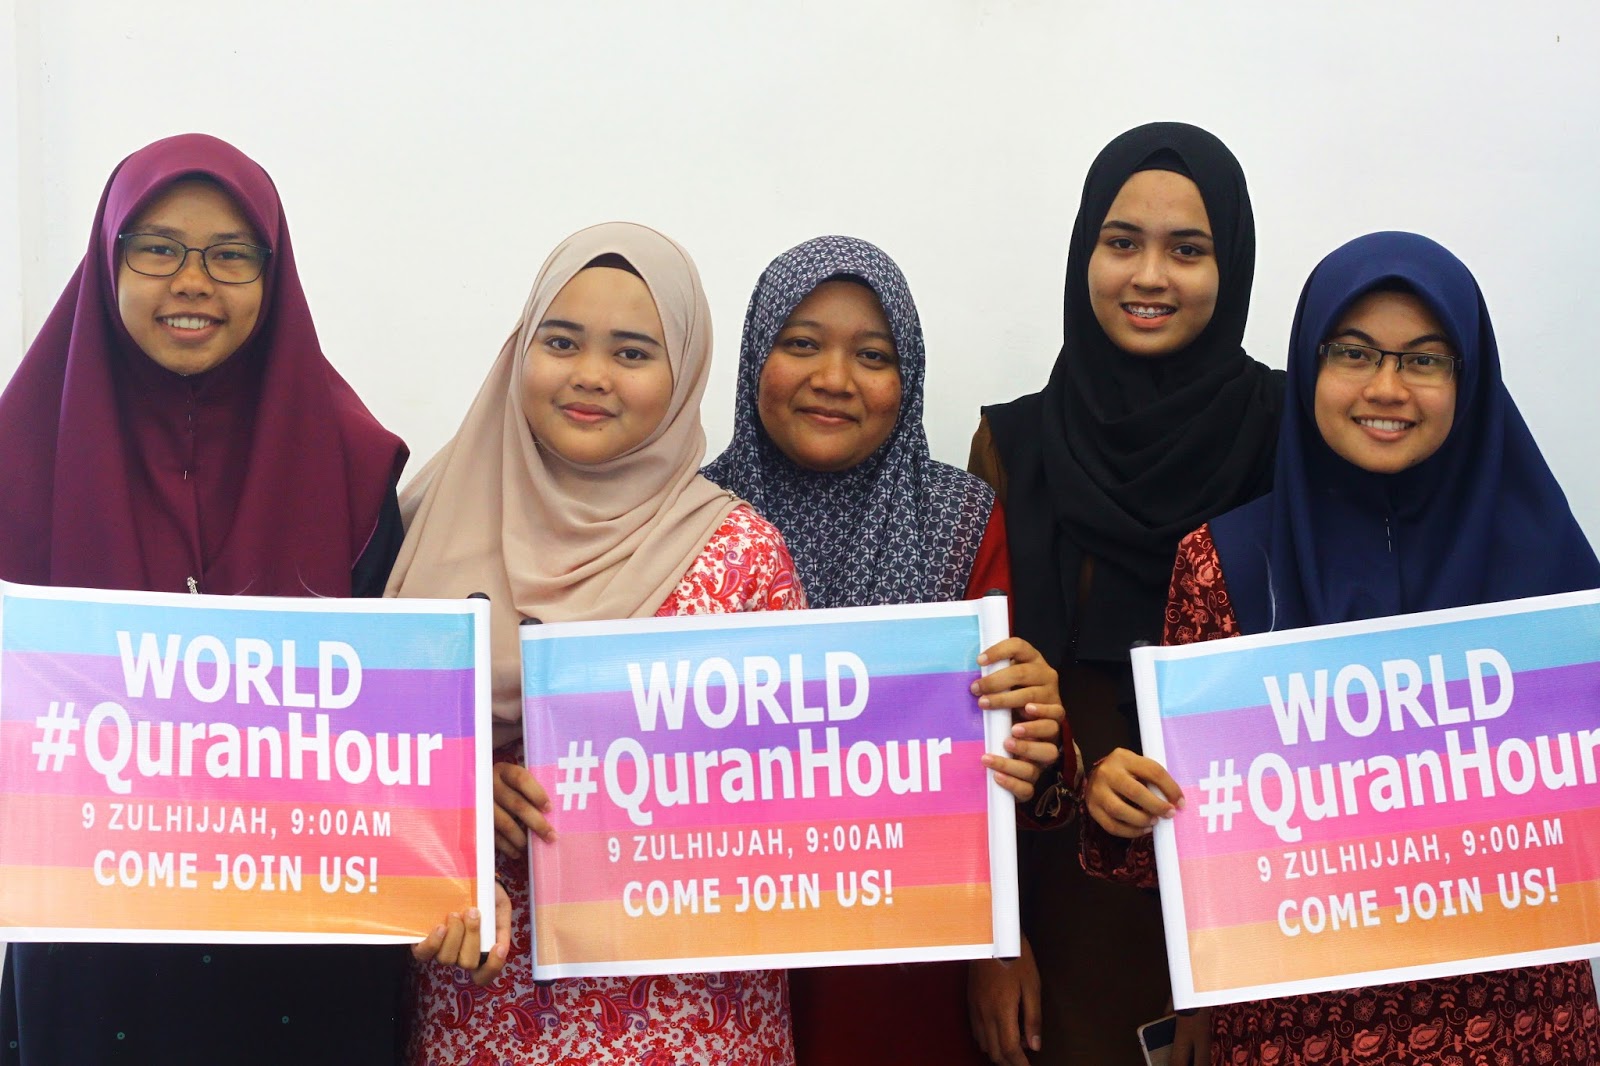 World #Quranhour di SMK Jerlun